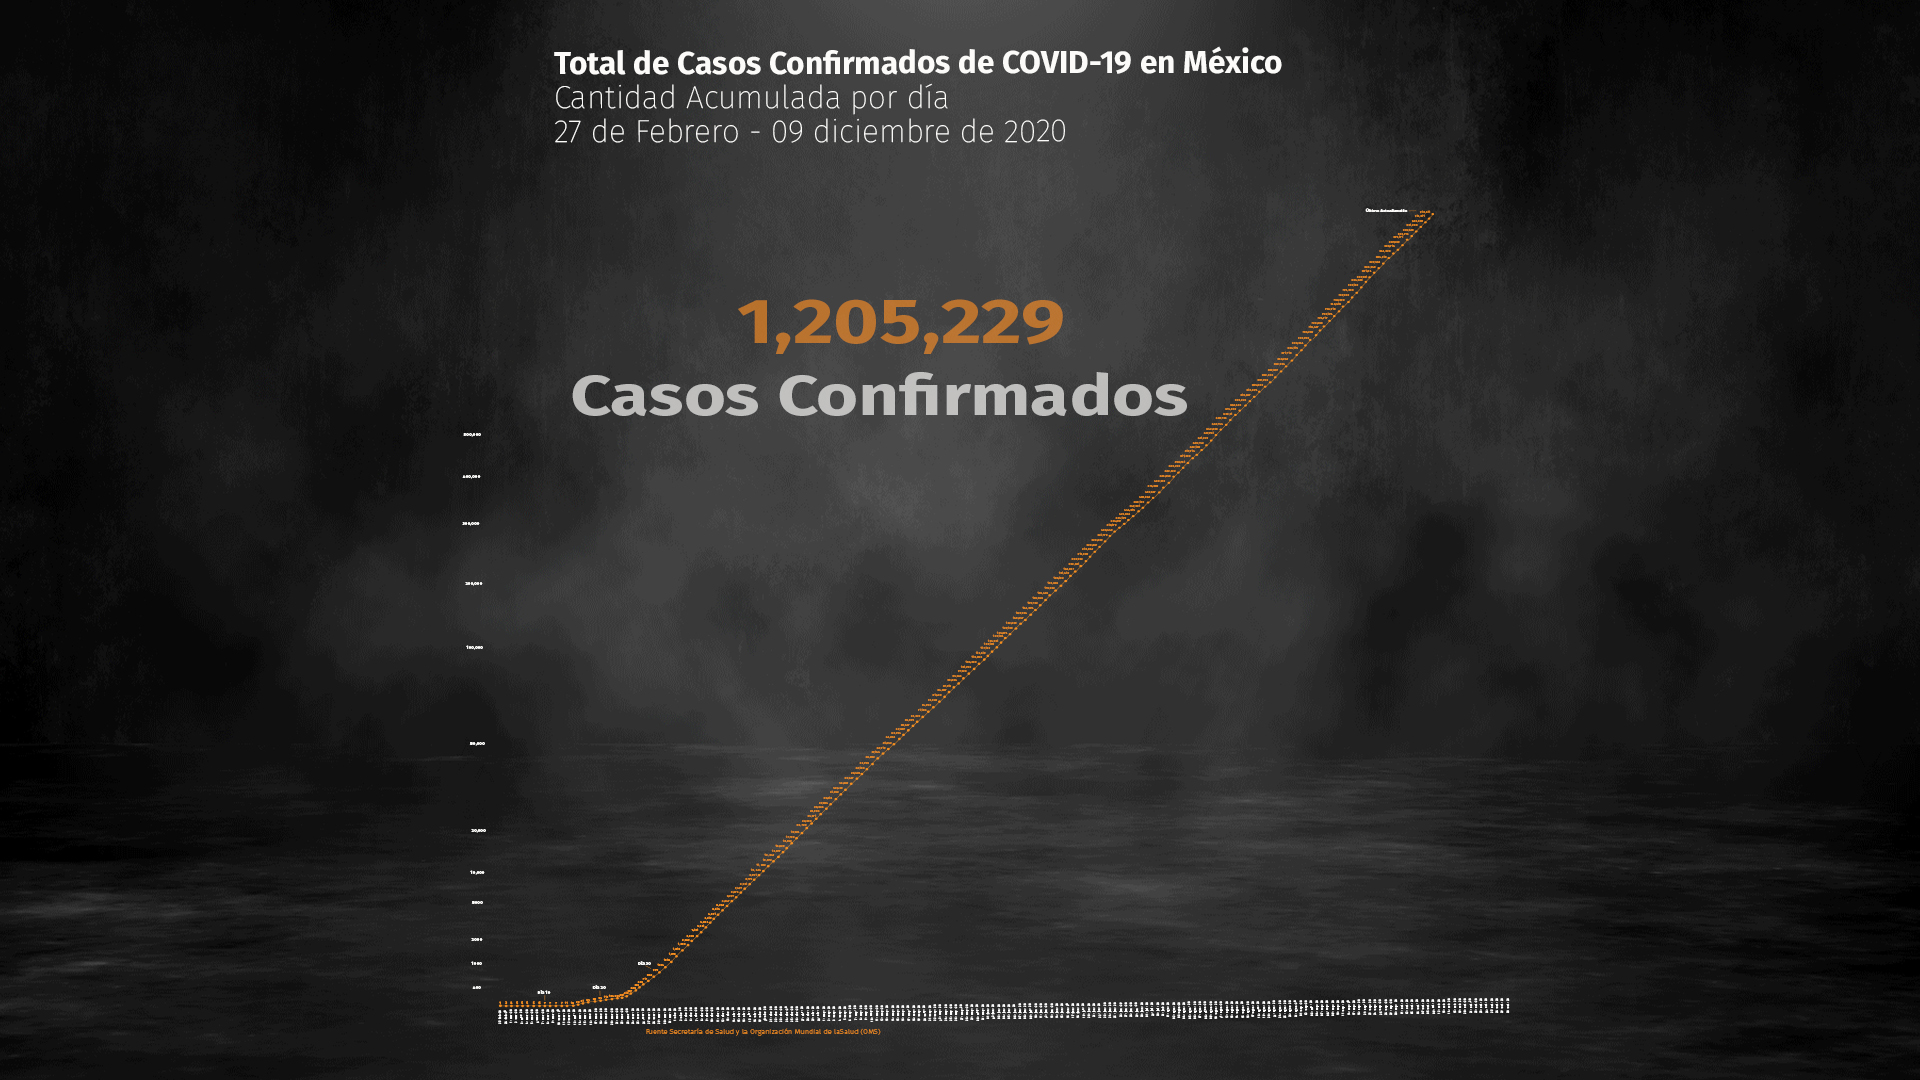 Hasta este miércoles 9 de diciembre, la SSa registró 1,205,229 casos positivos y 111,655 defunciones acumuladas por COVID-19 en México (Ilustración: Steve Allen)